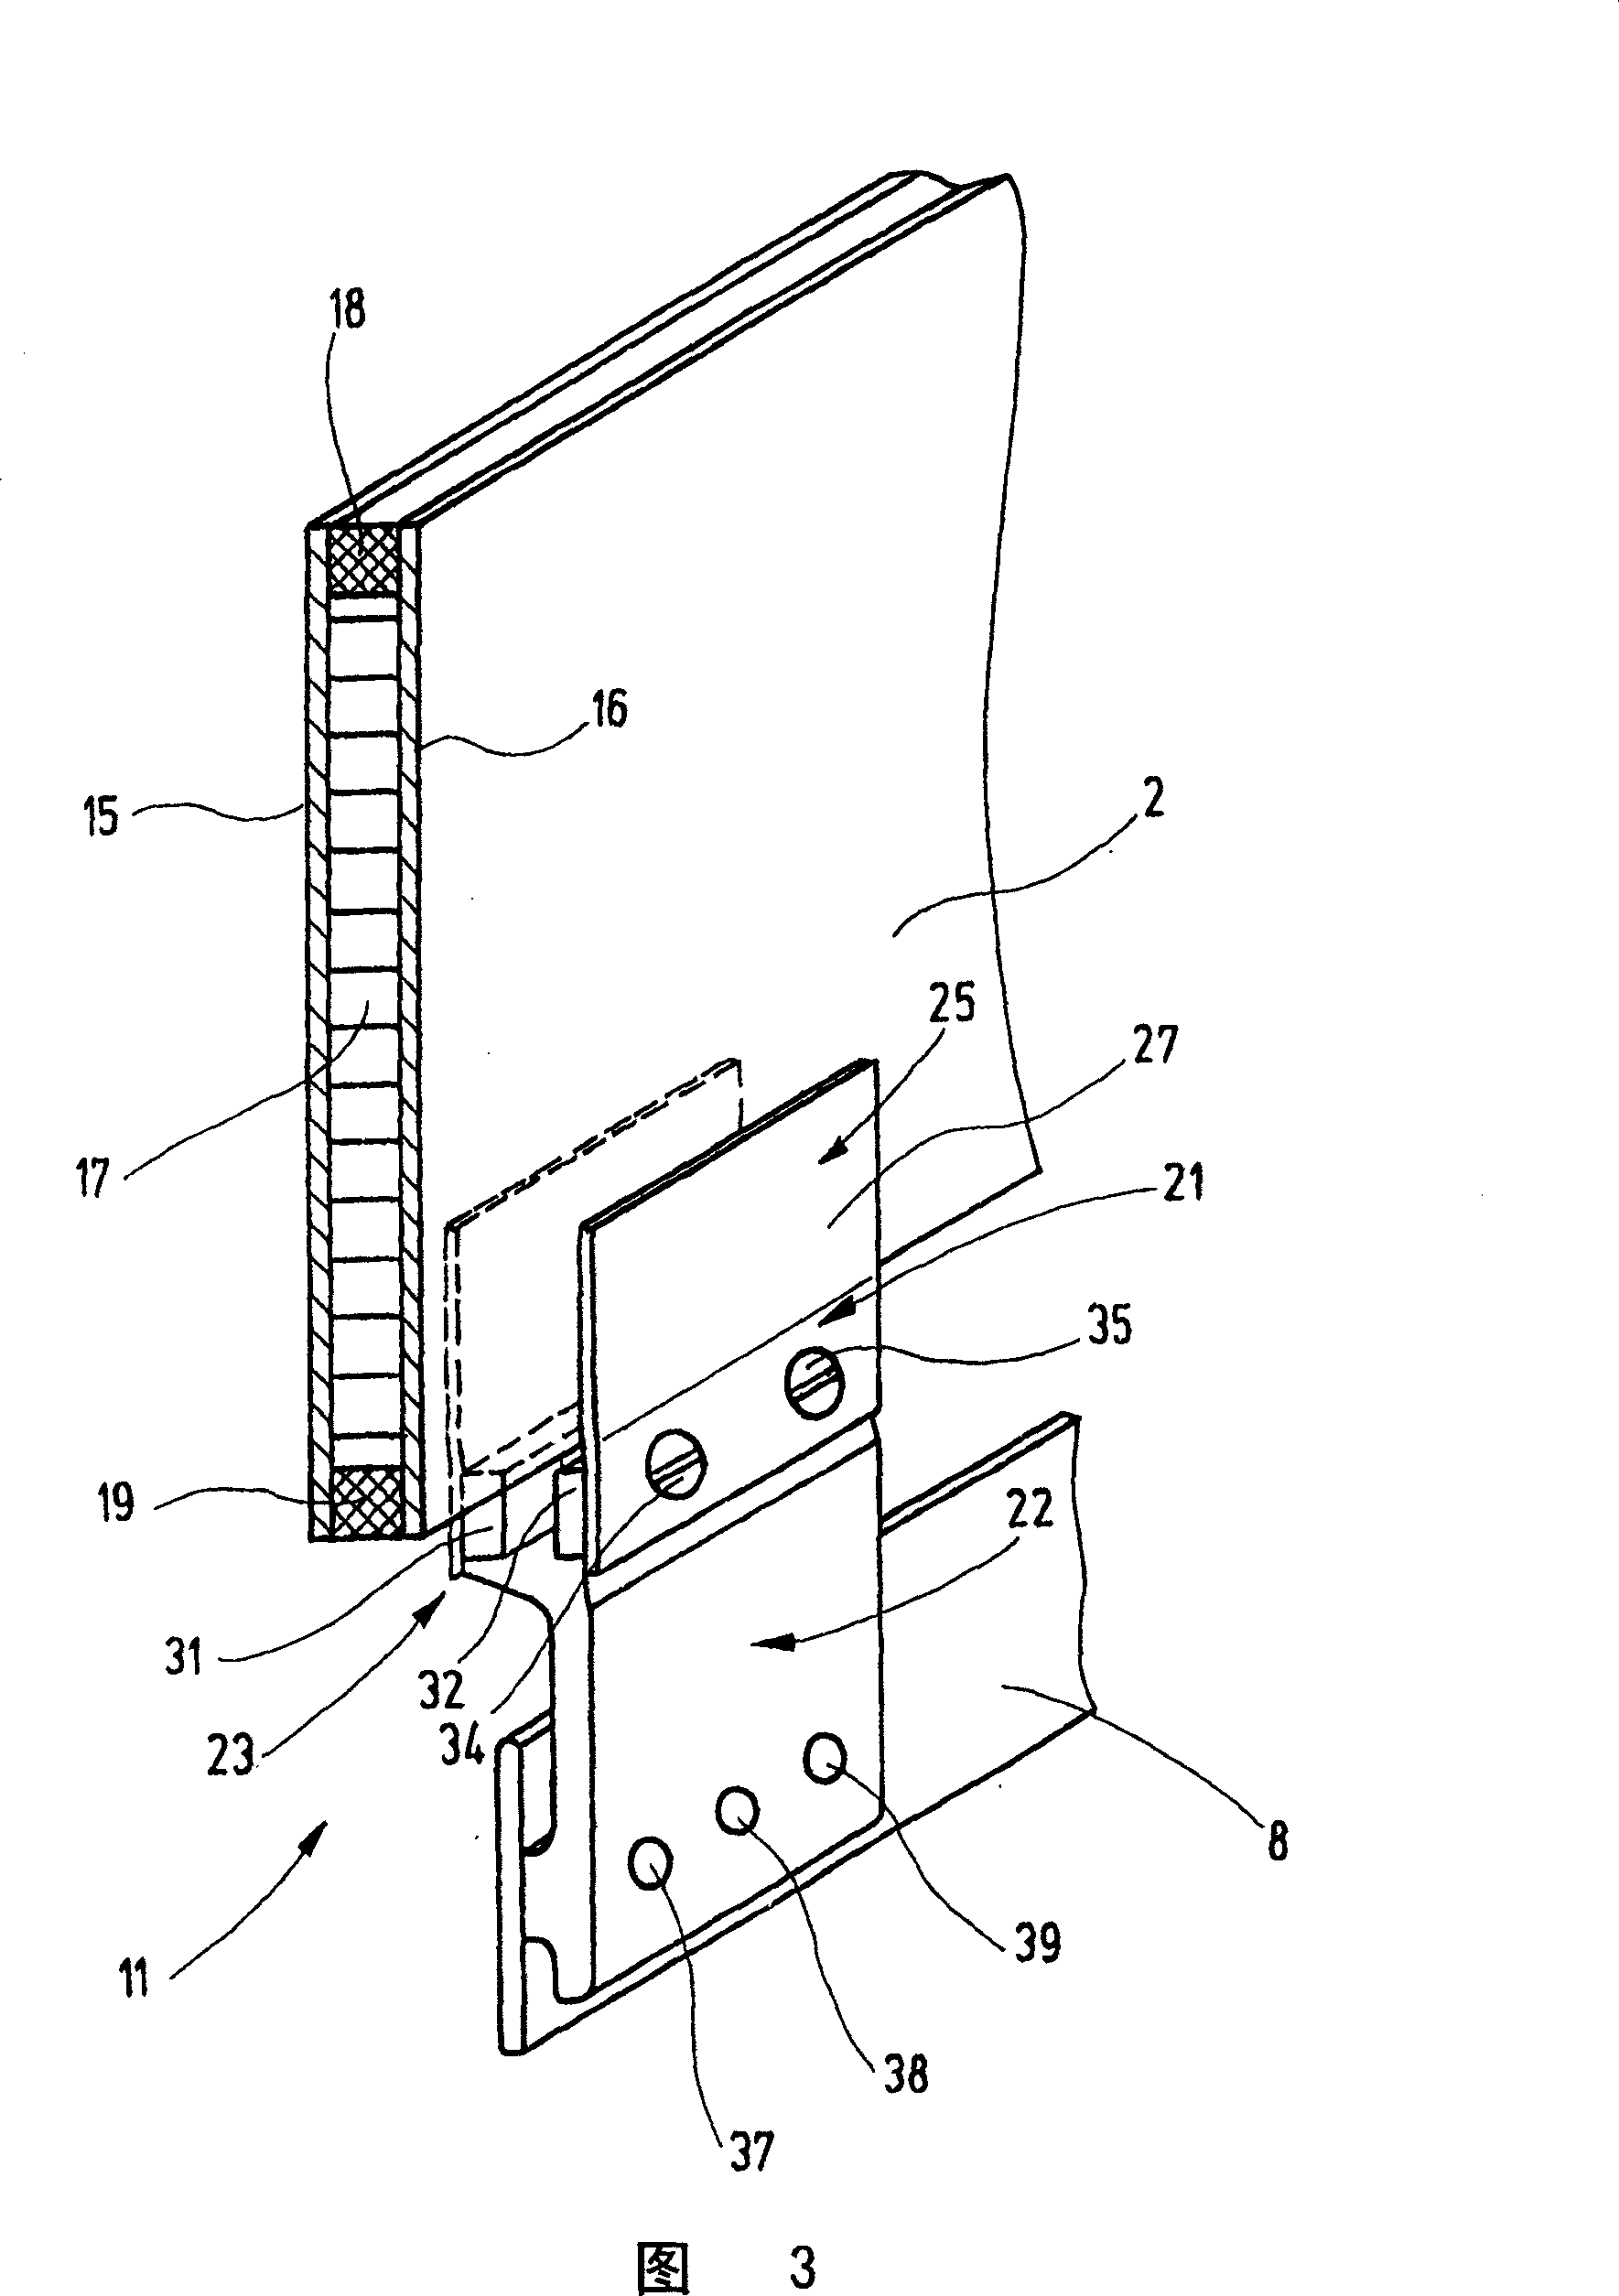 Heald shaft for a weaving machine